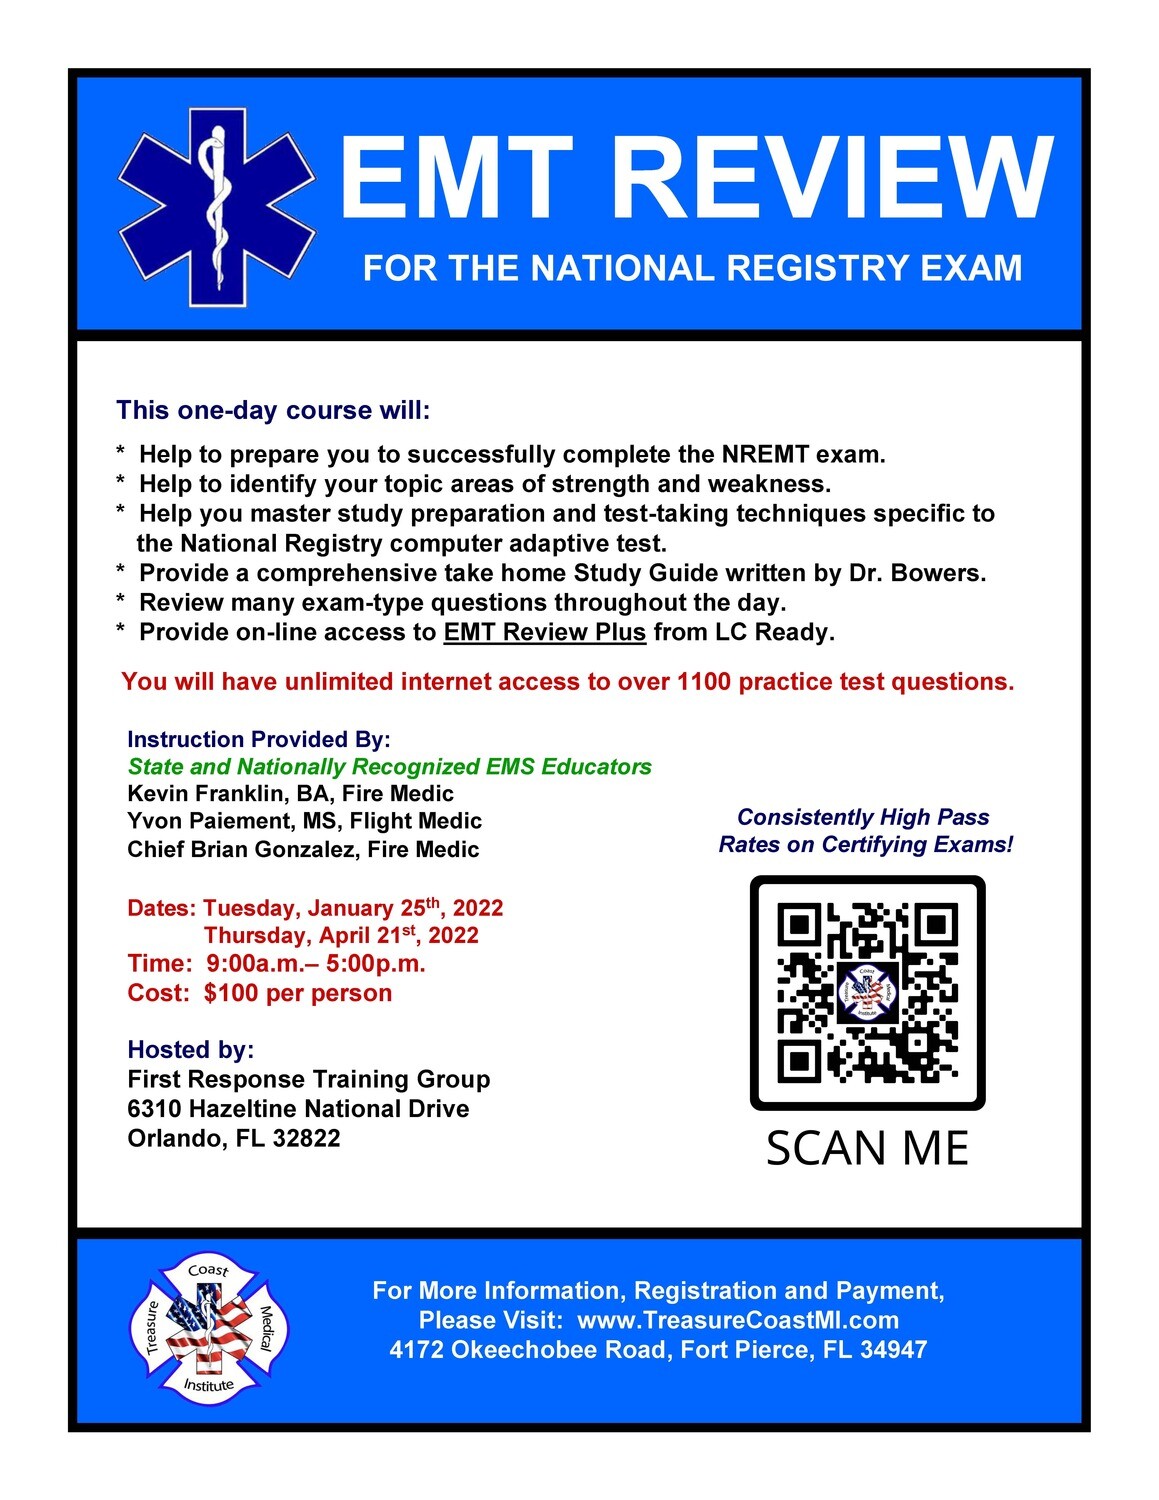 EMT Exam Review January 25th Orlando